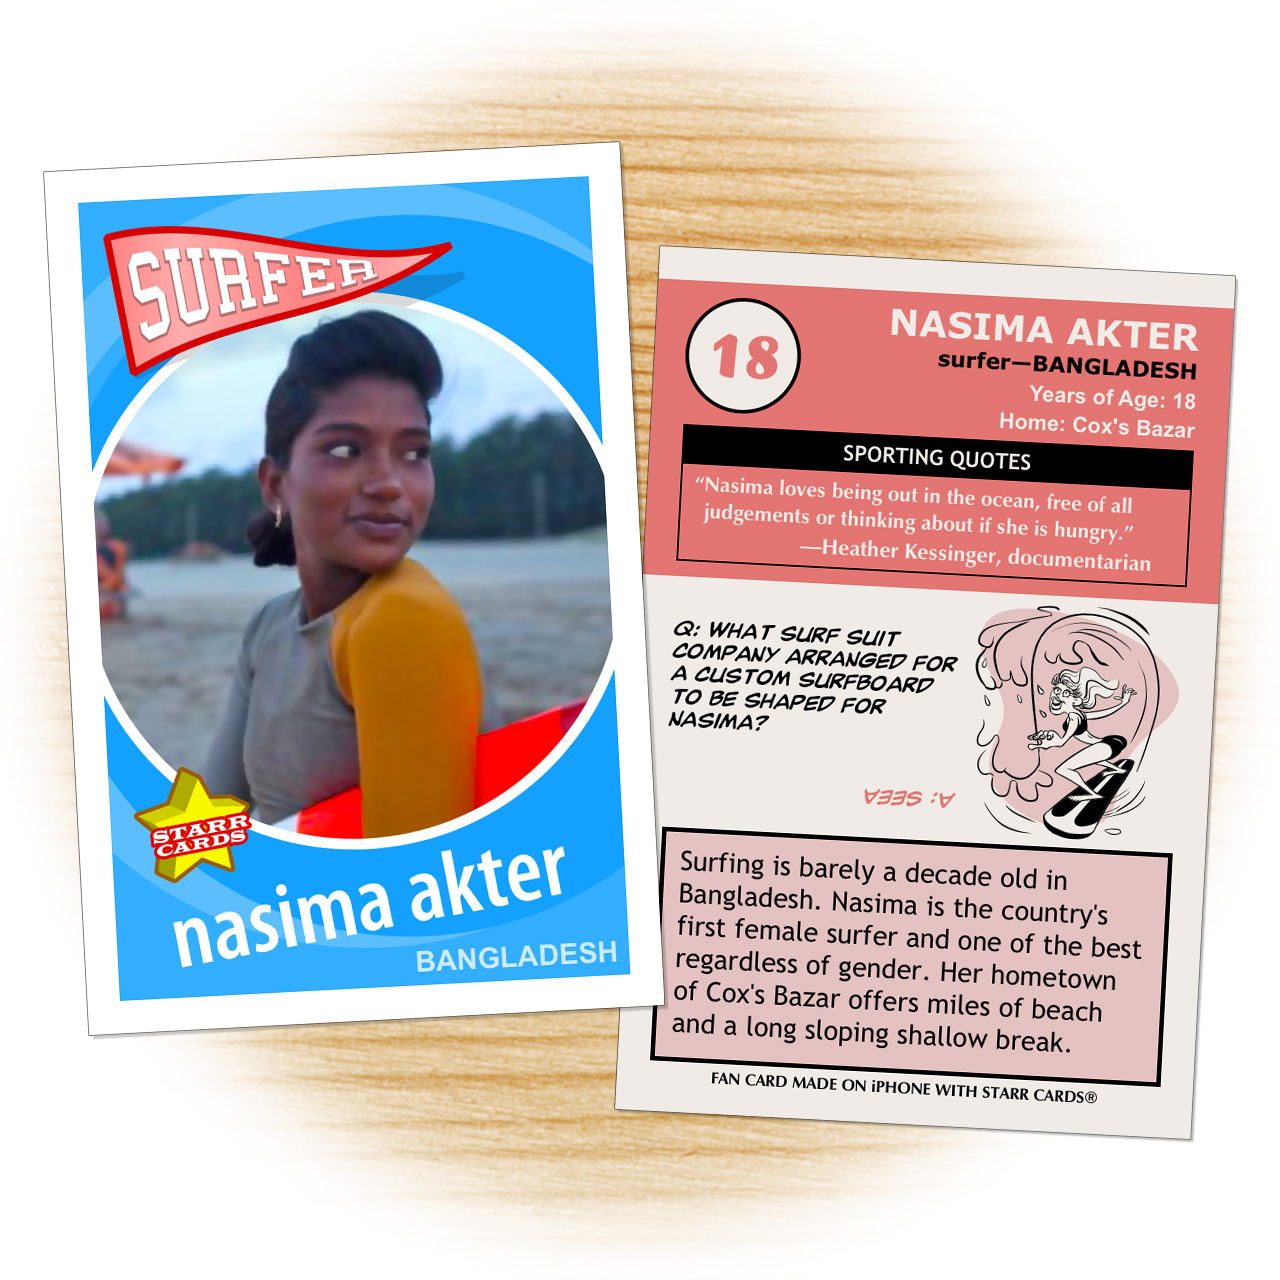 Bangladeshi surfer girl Nasima Akter